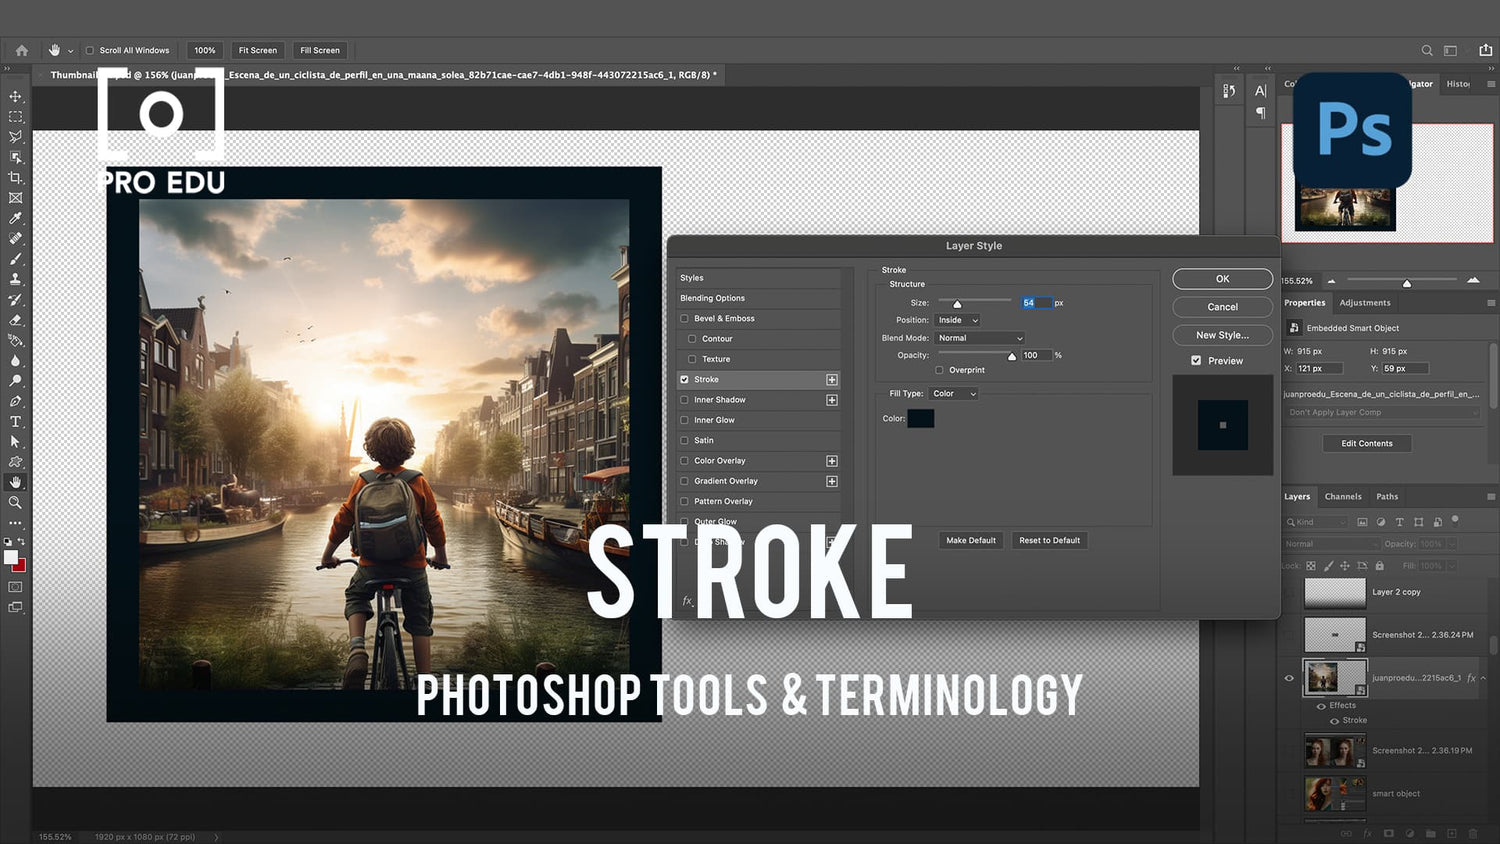 Stroke Feature in Photoshop - PRO EDU Beginner's Guide